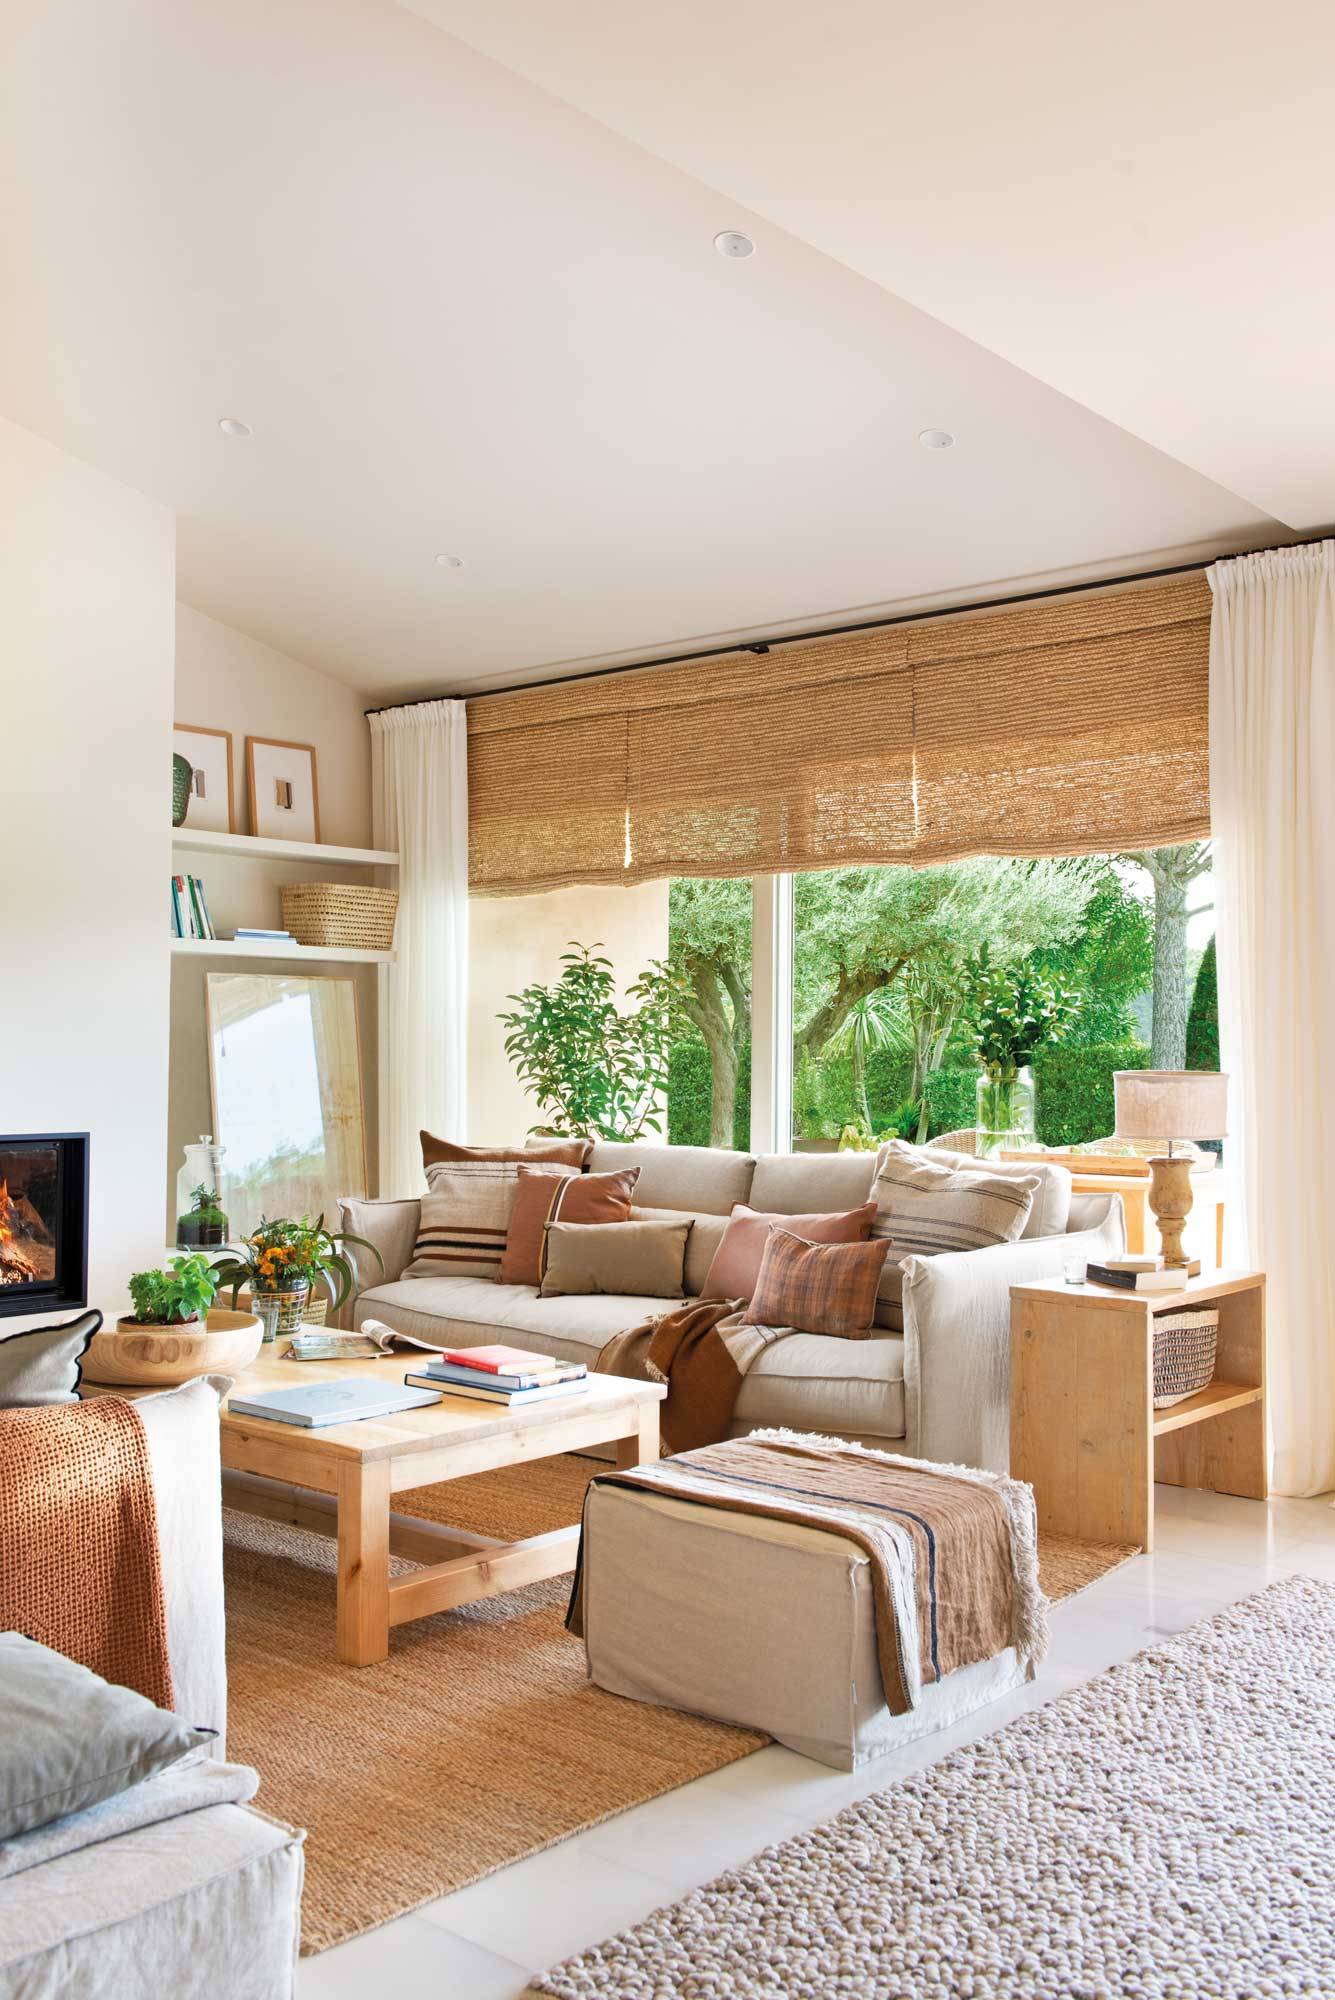 Salón con ventanal decorado en tonos neutros con muebles de madera y piezas de fibras naturales 00531366